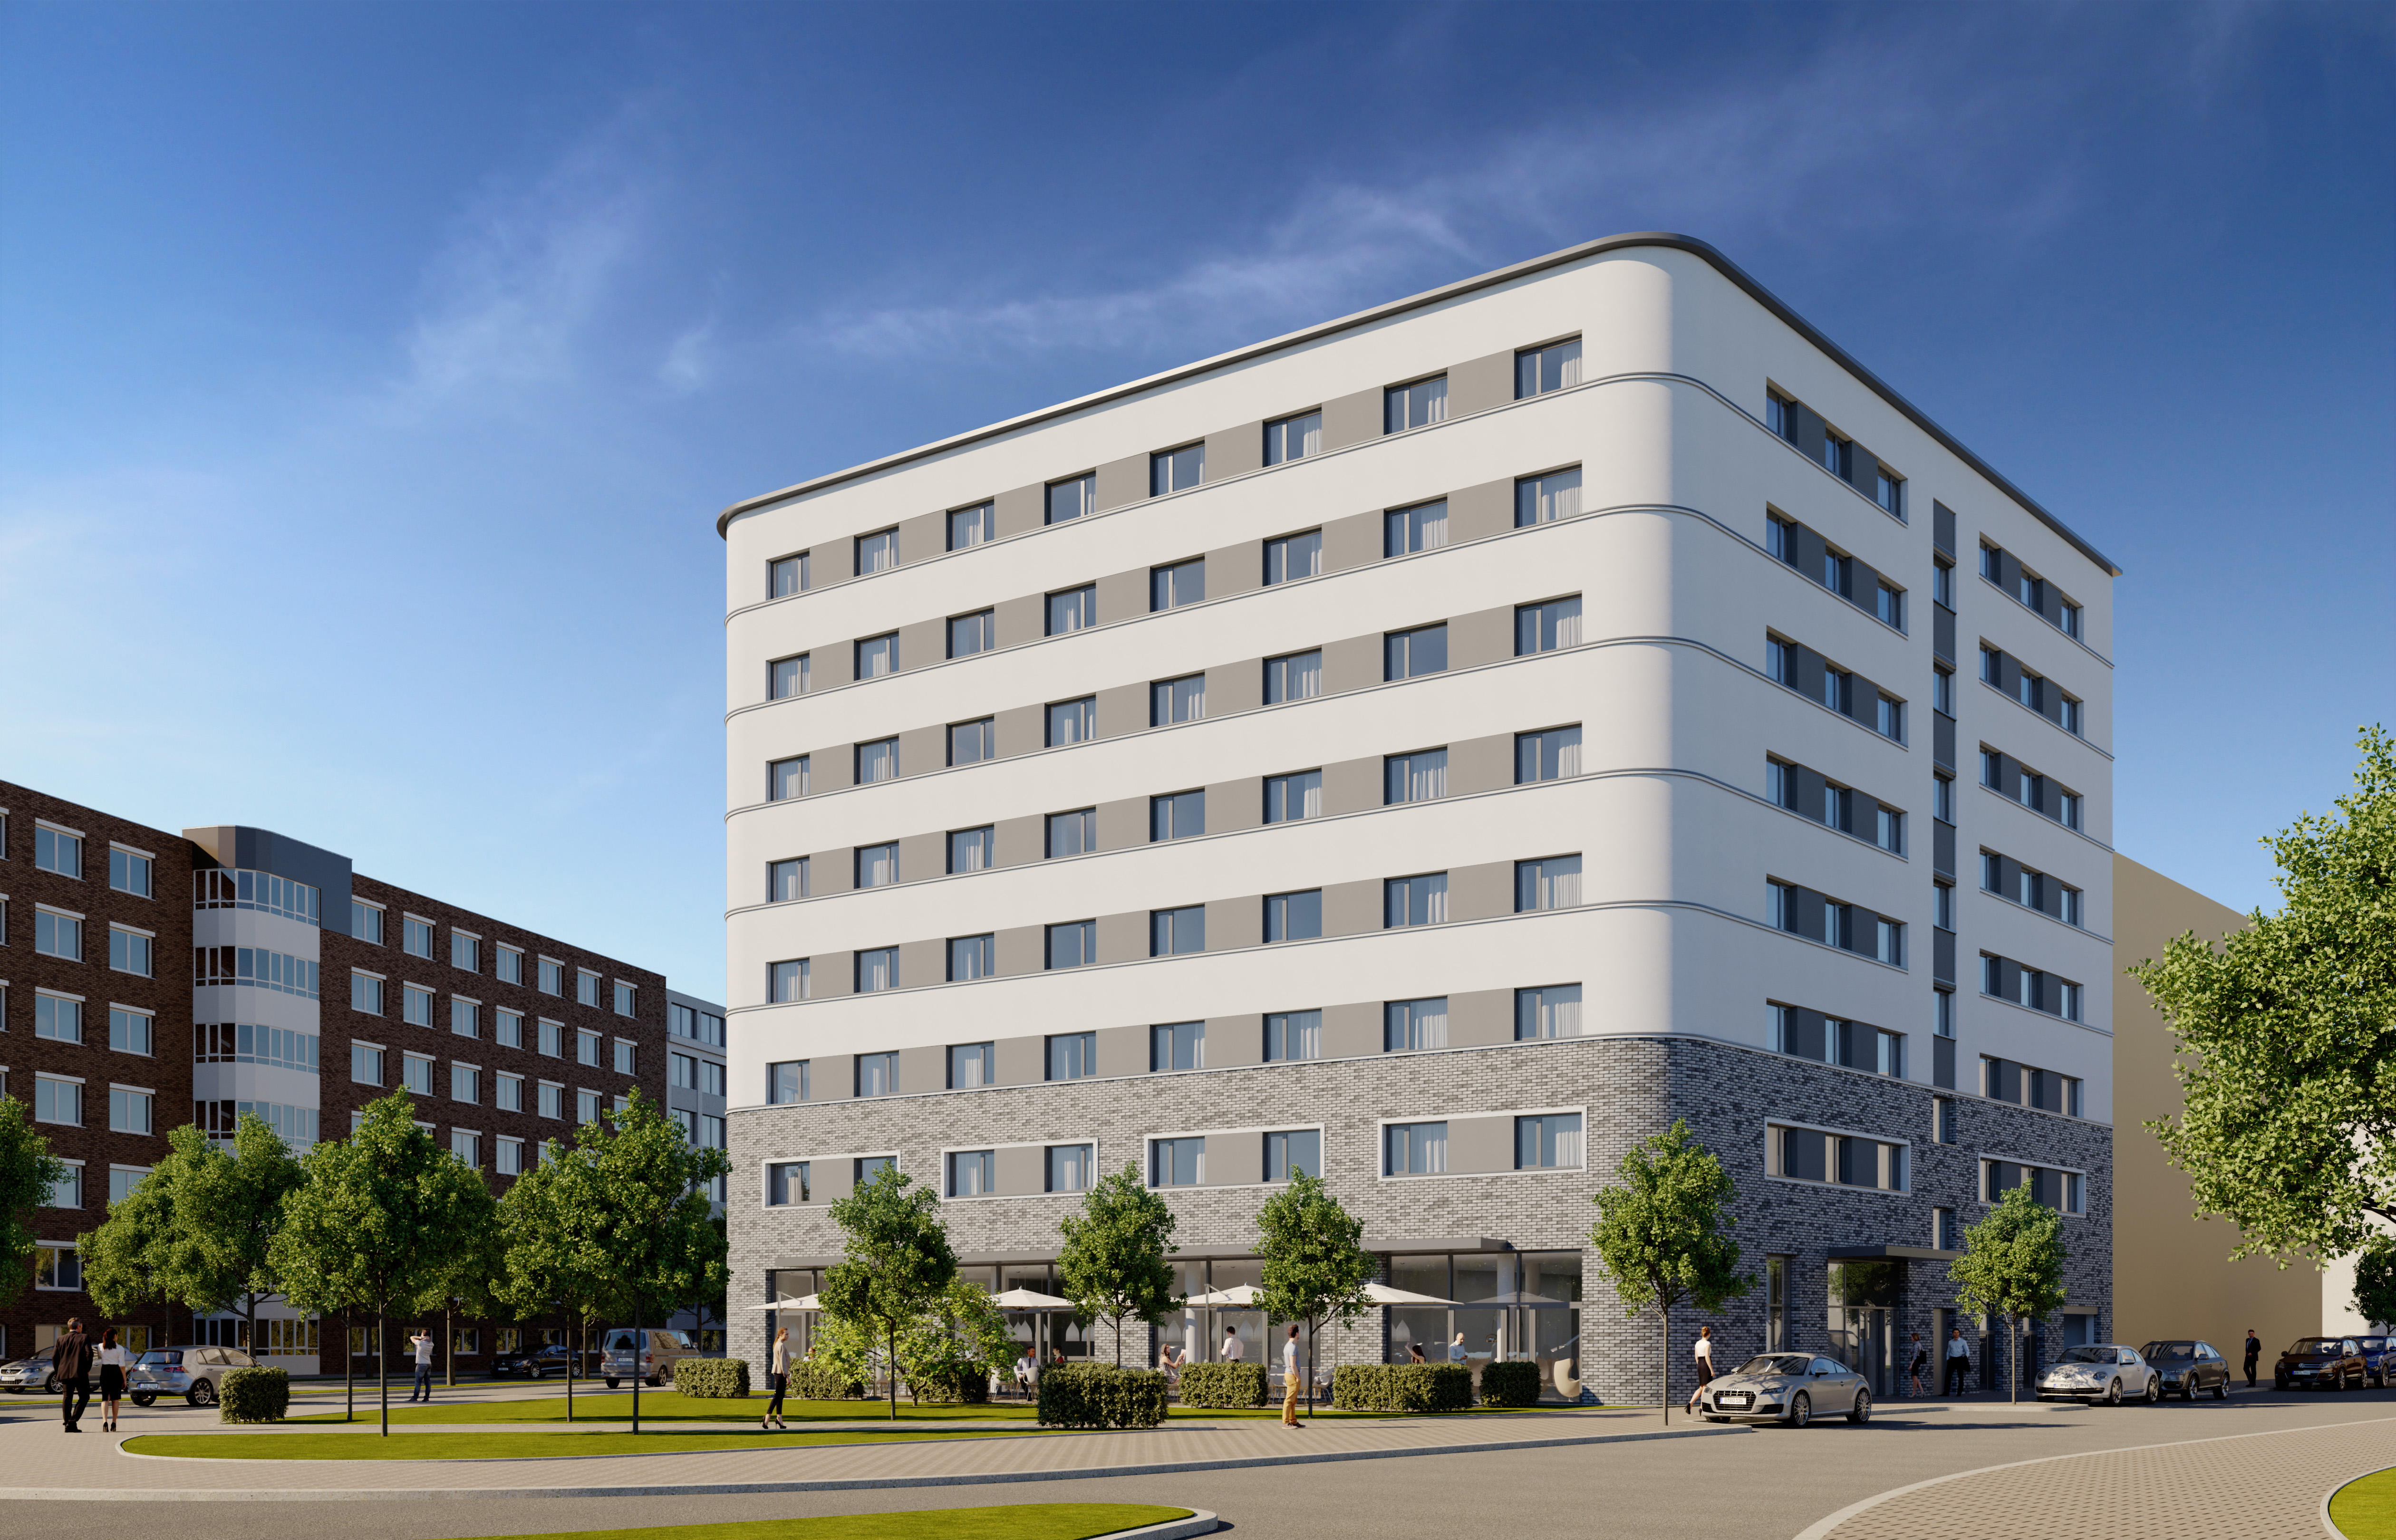 Neubau Premier Inn Hotel Saarbrücken – kurz vor der Übergabe